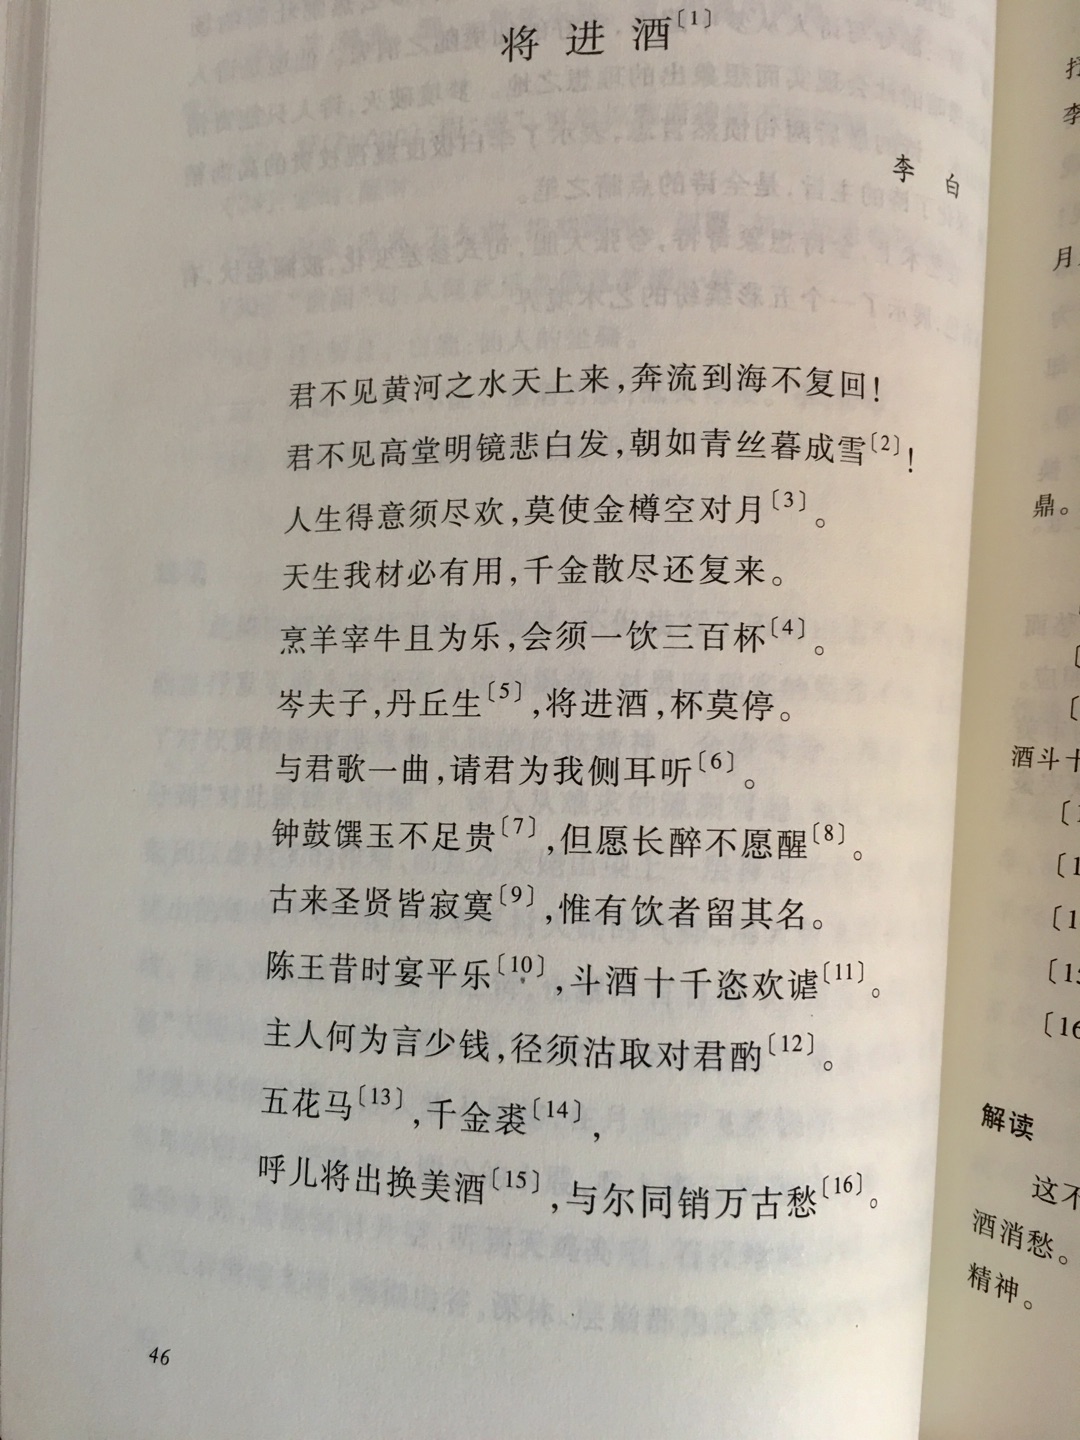 书本嗯不错，纸质也挺好，回味回味经典，有空可以看看，好好体会中华文化的博大精深。